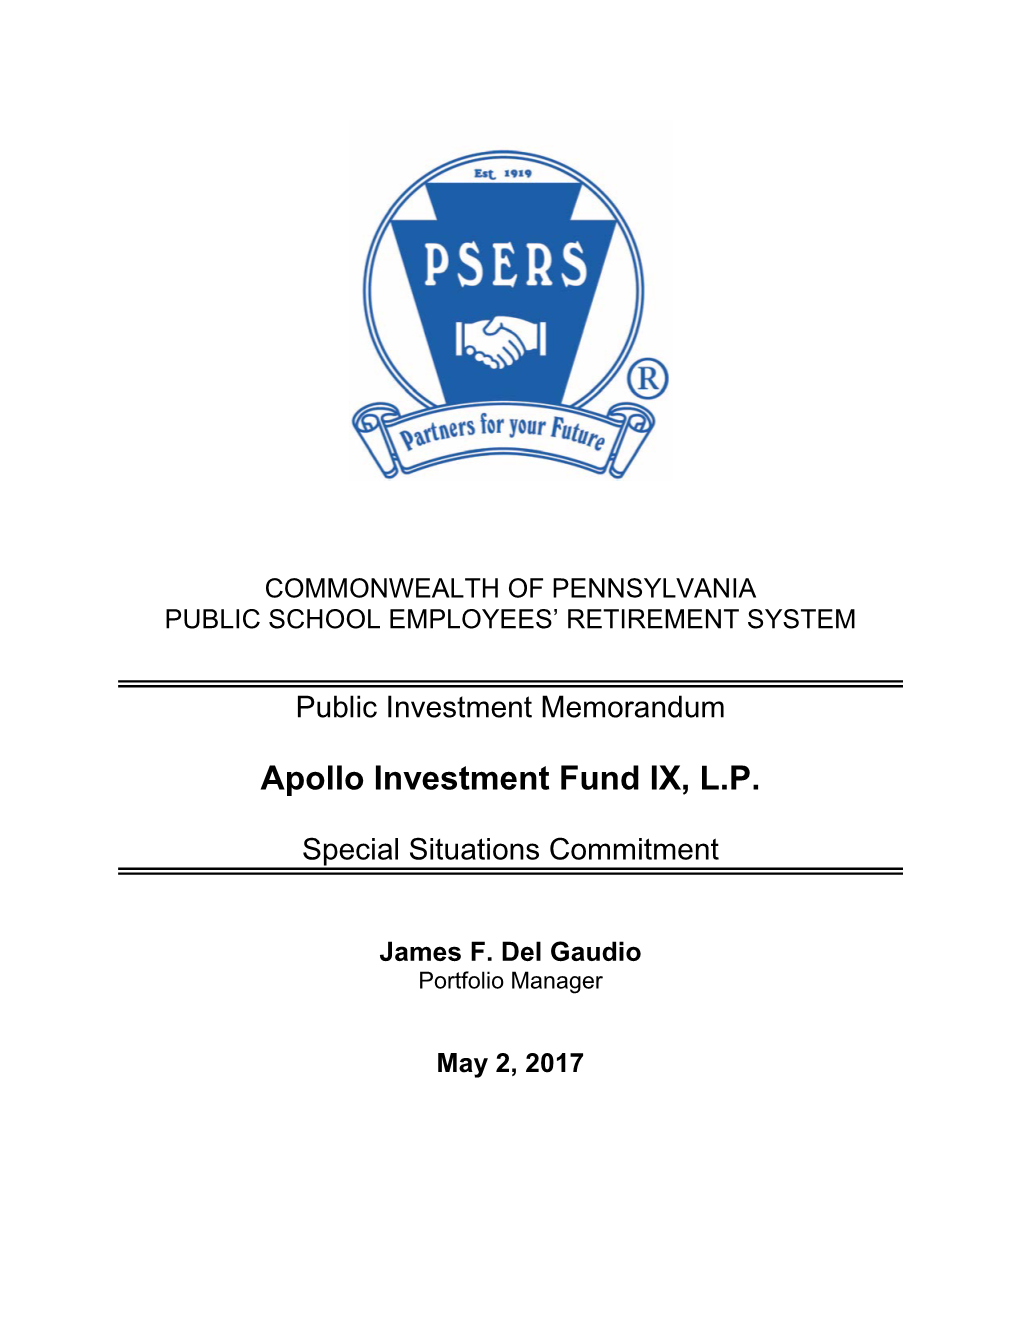 Apollo Investment Fund IX, LP